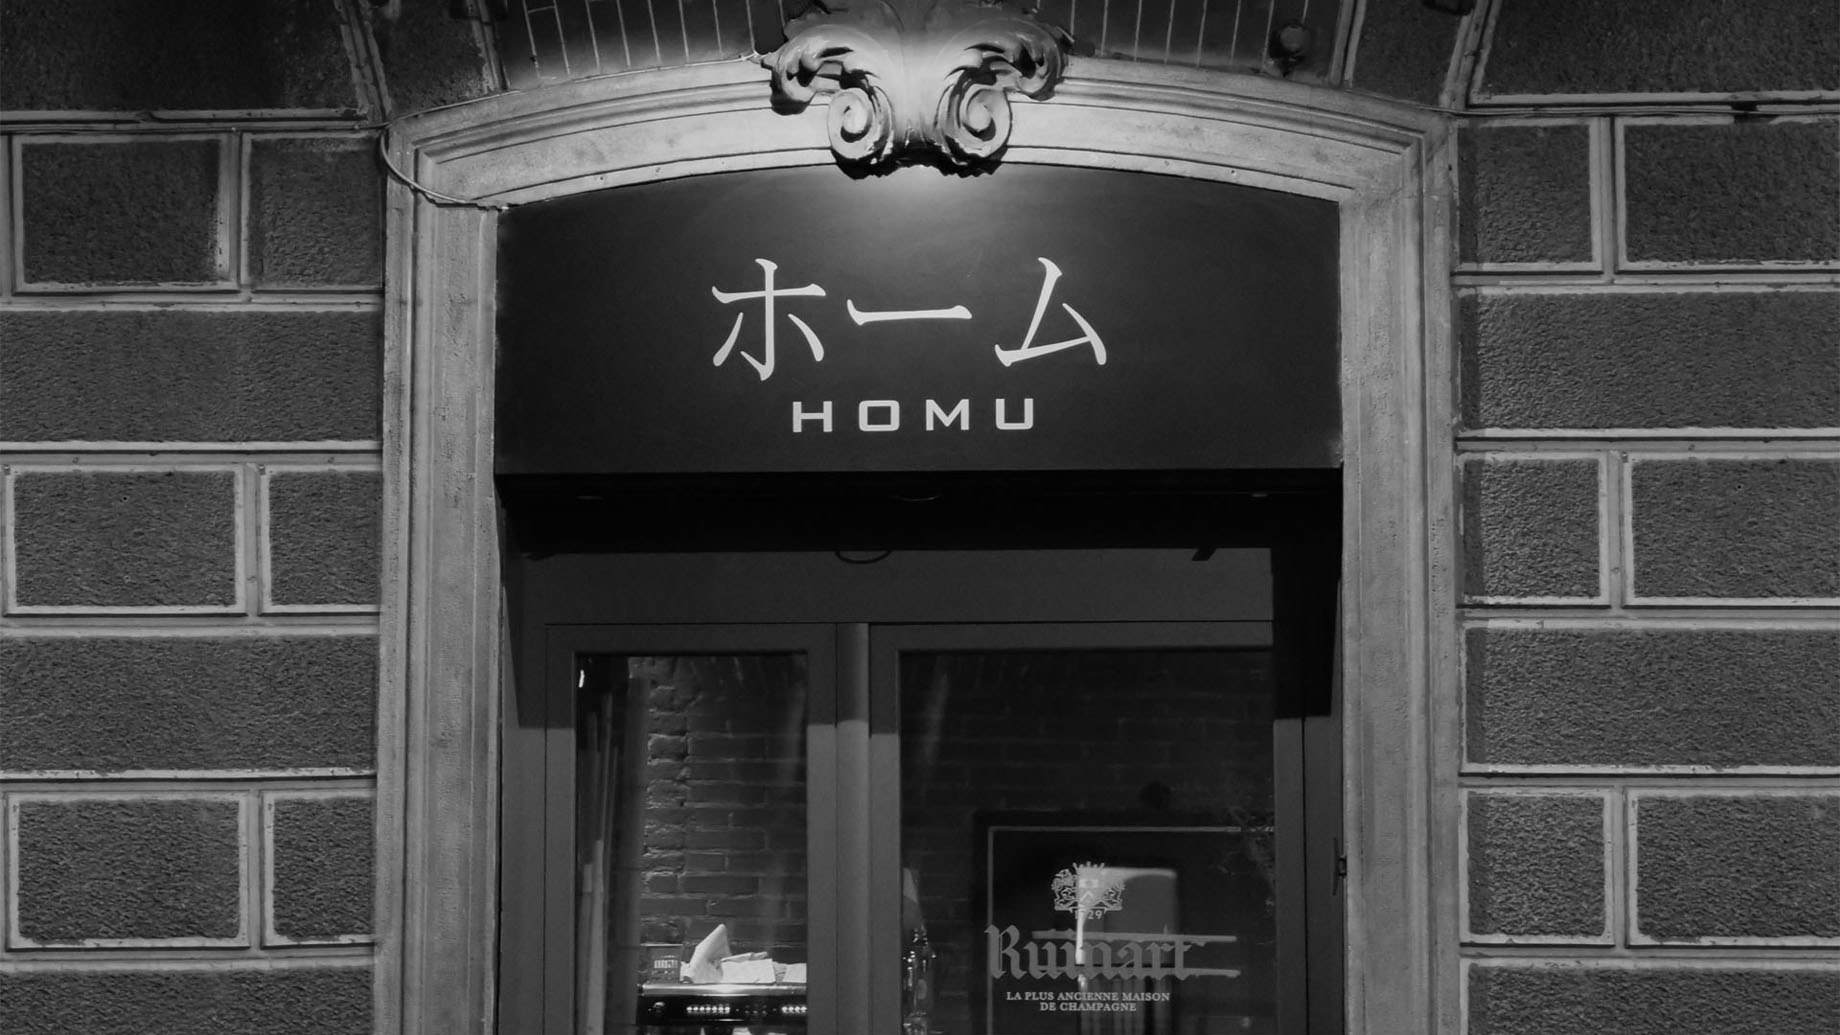 homu_ristorante_ingresso_new